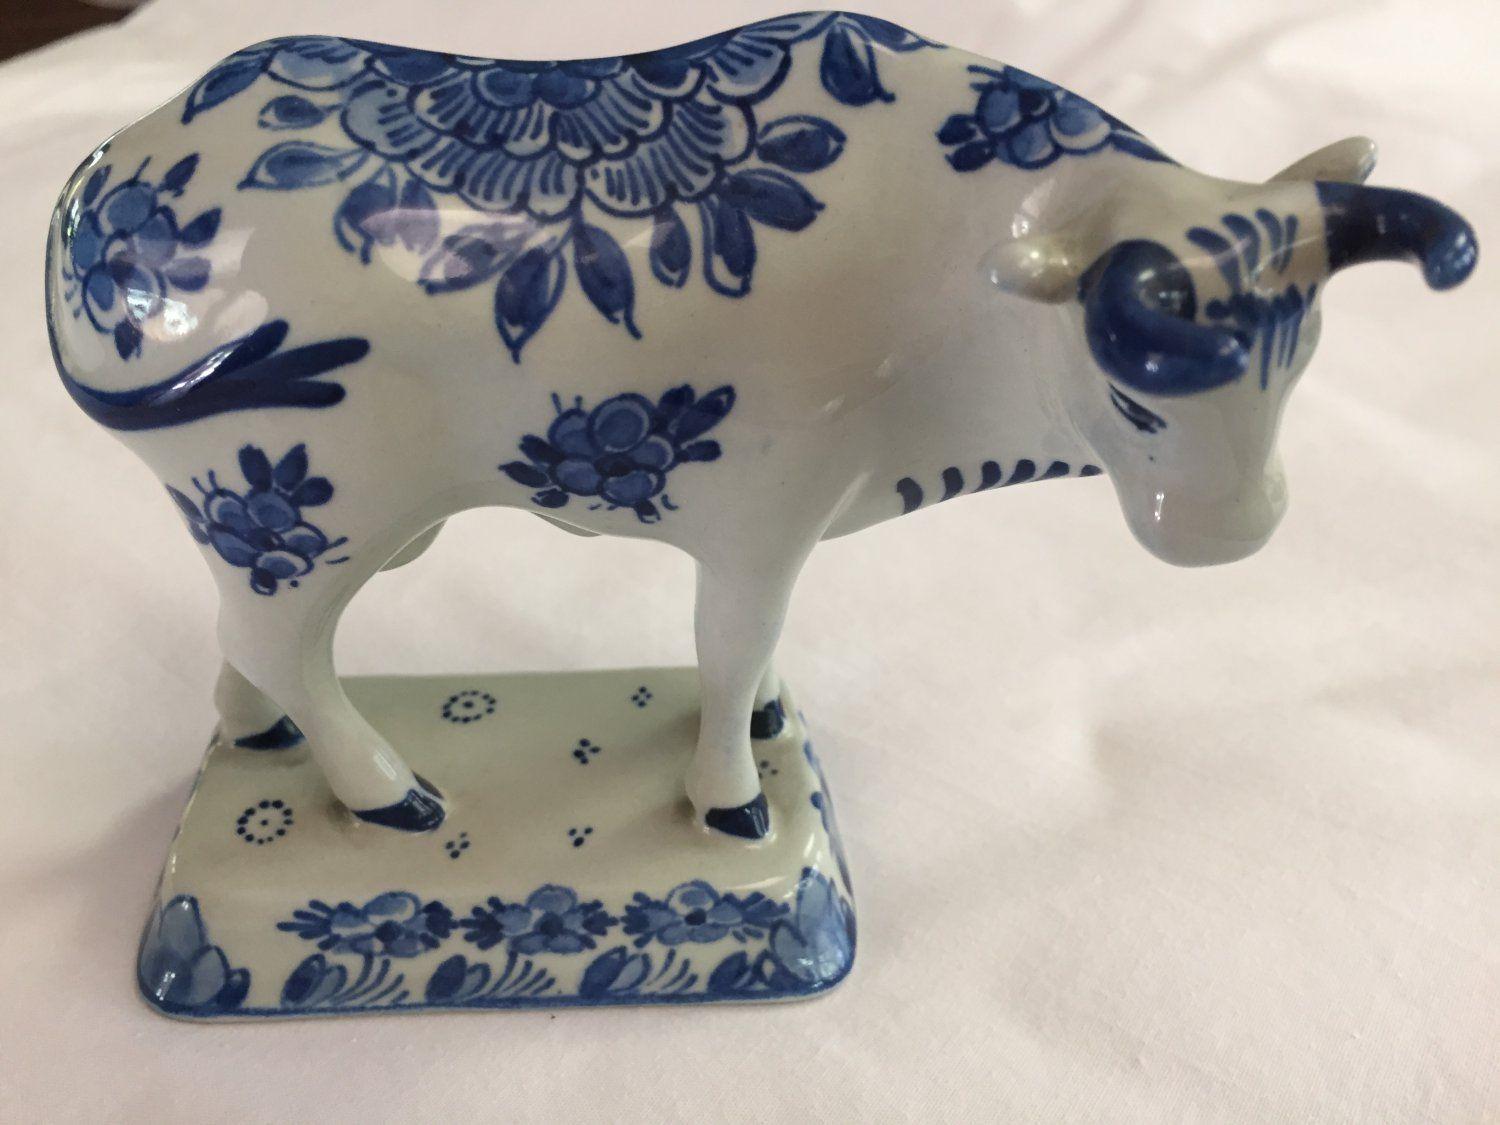 Blue and White Bull Logo - 1964 De Porceleyne Fles Royal Delft Blue & White Bull Cow